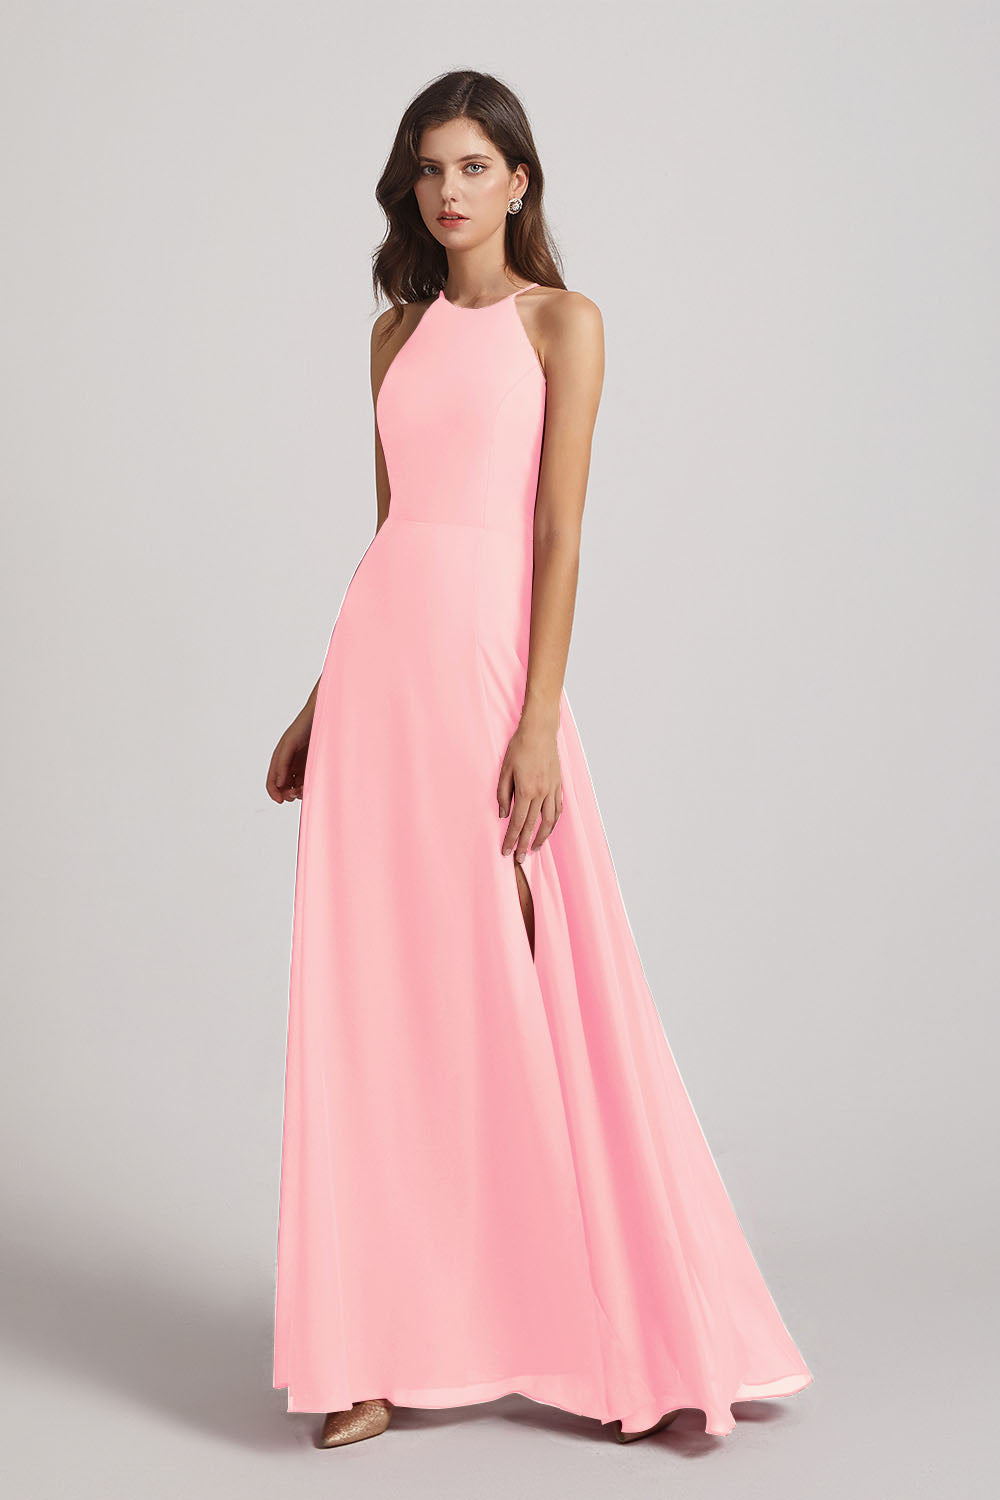 Alfa Bridal Pink Halter Chiffon Maxi Dresses with Side Slit (AF0102)